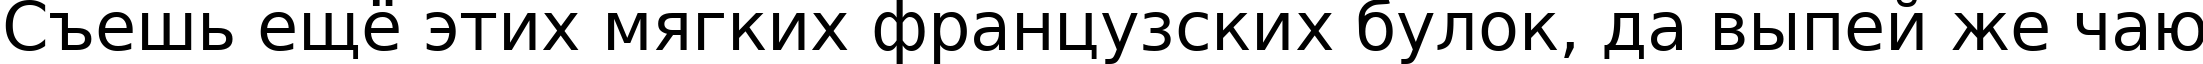 Пример написания шрифтом DejaVu Sans текста на русском